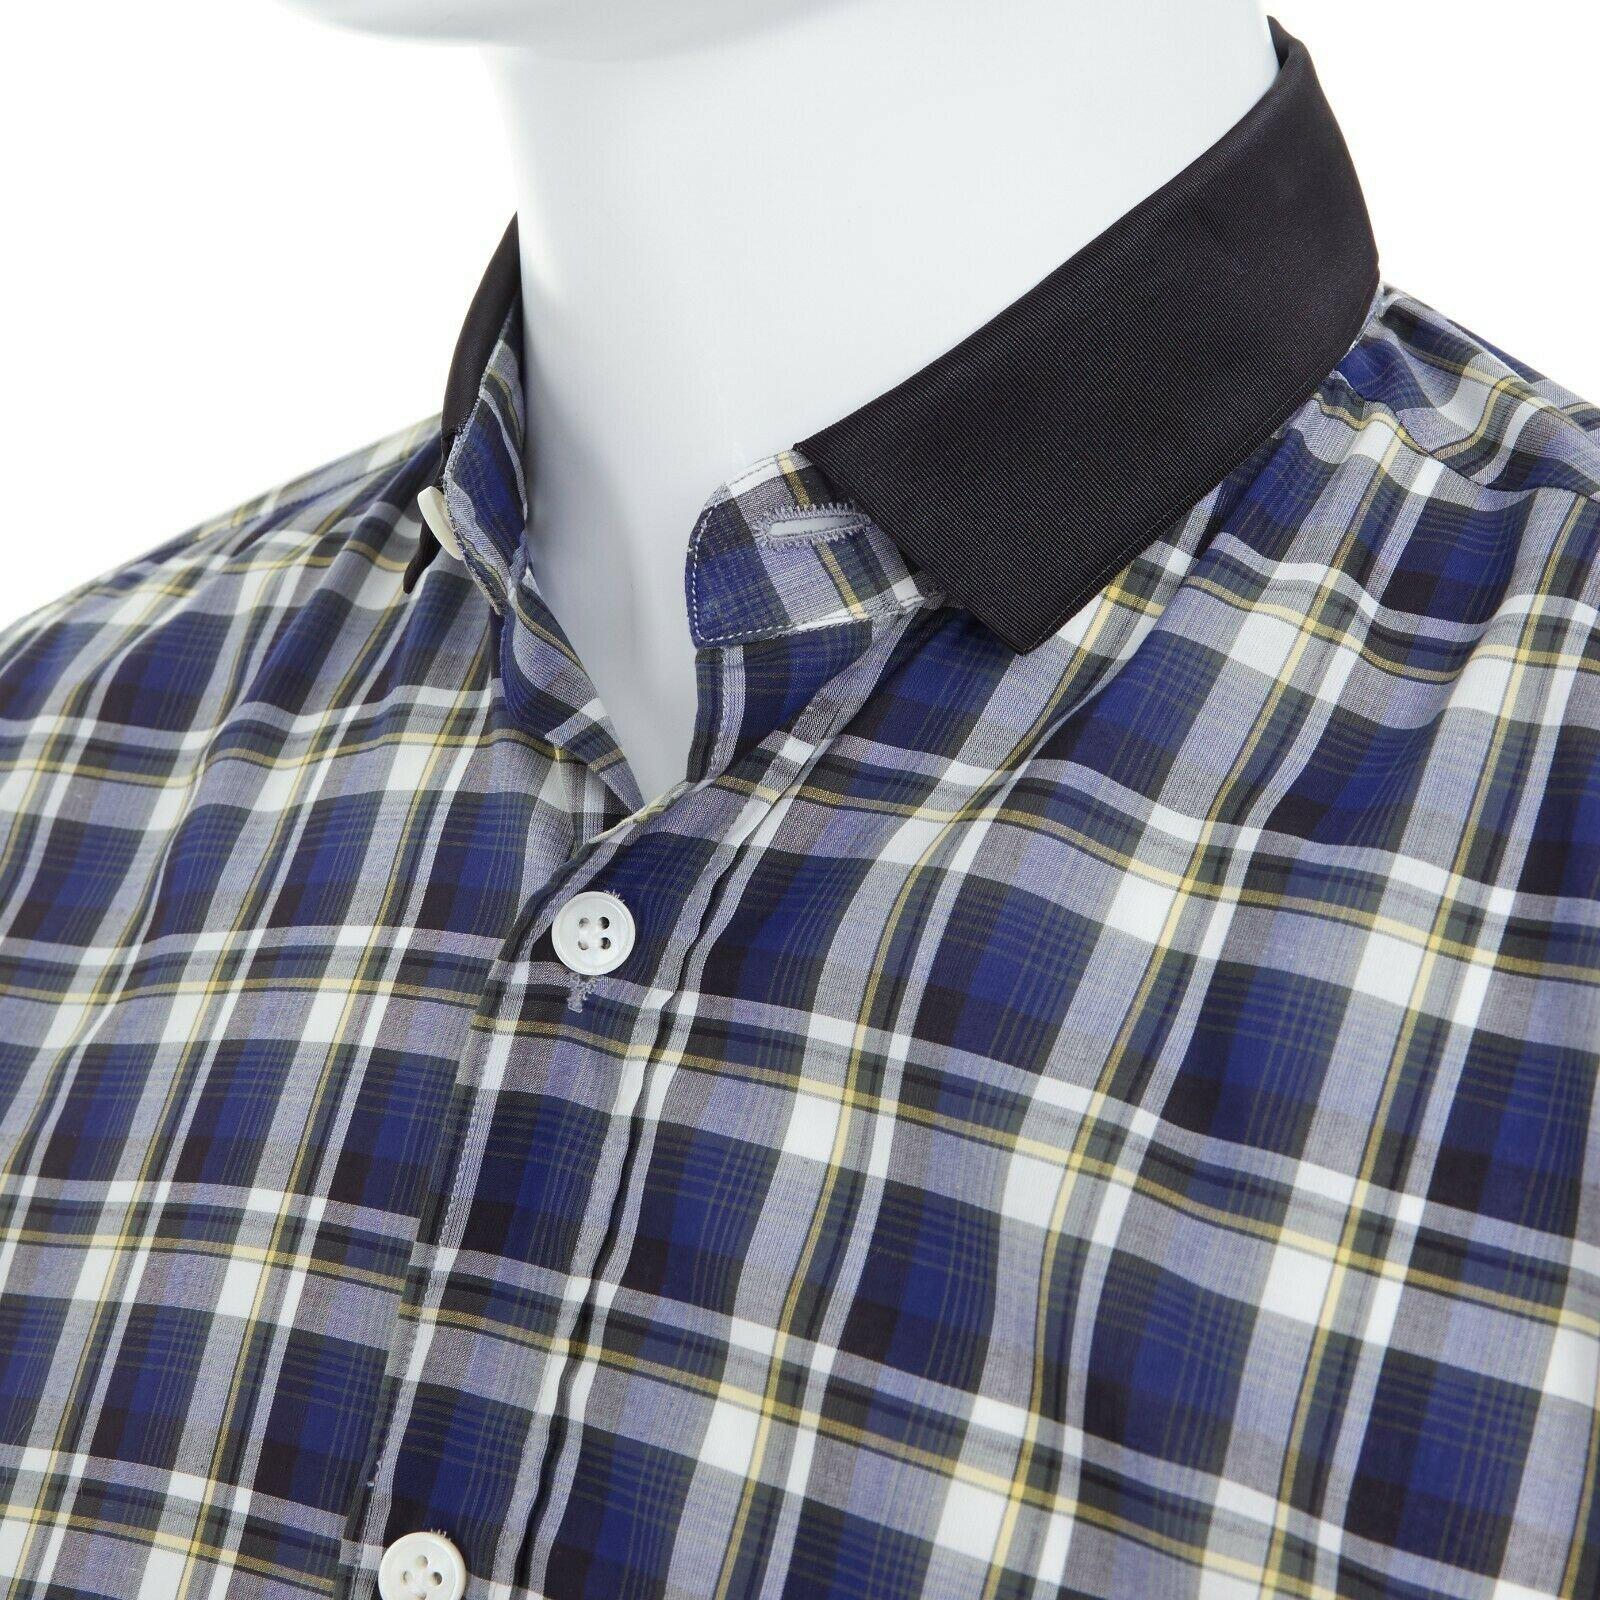 LANVIN ALBER ELBAZ blue checked cotton grosgrain ribbon collar shirt EU38 S For Sale 1